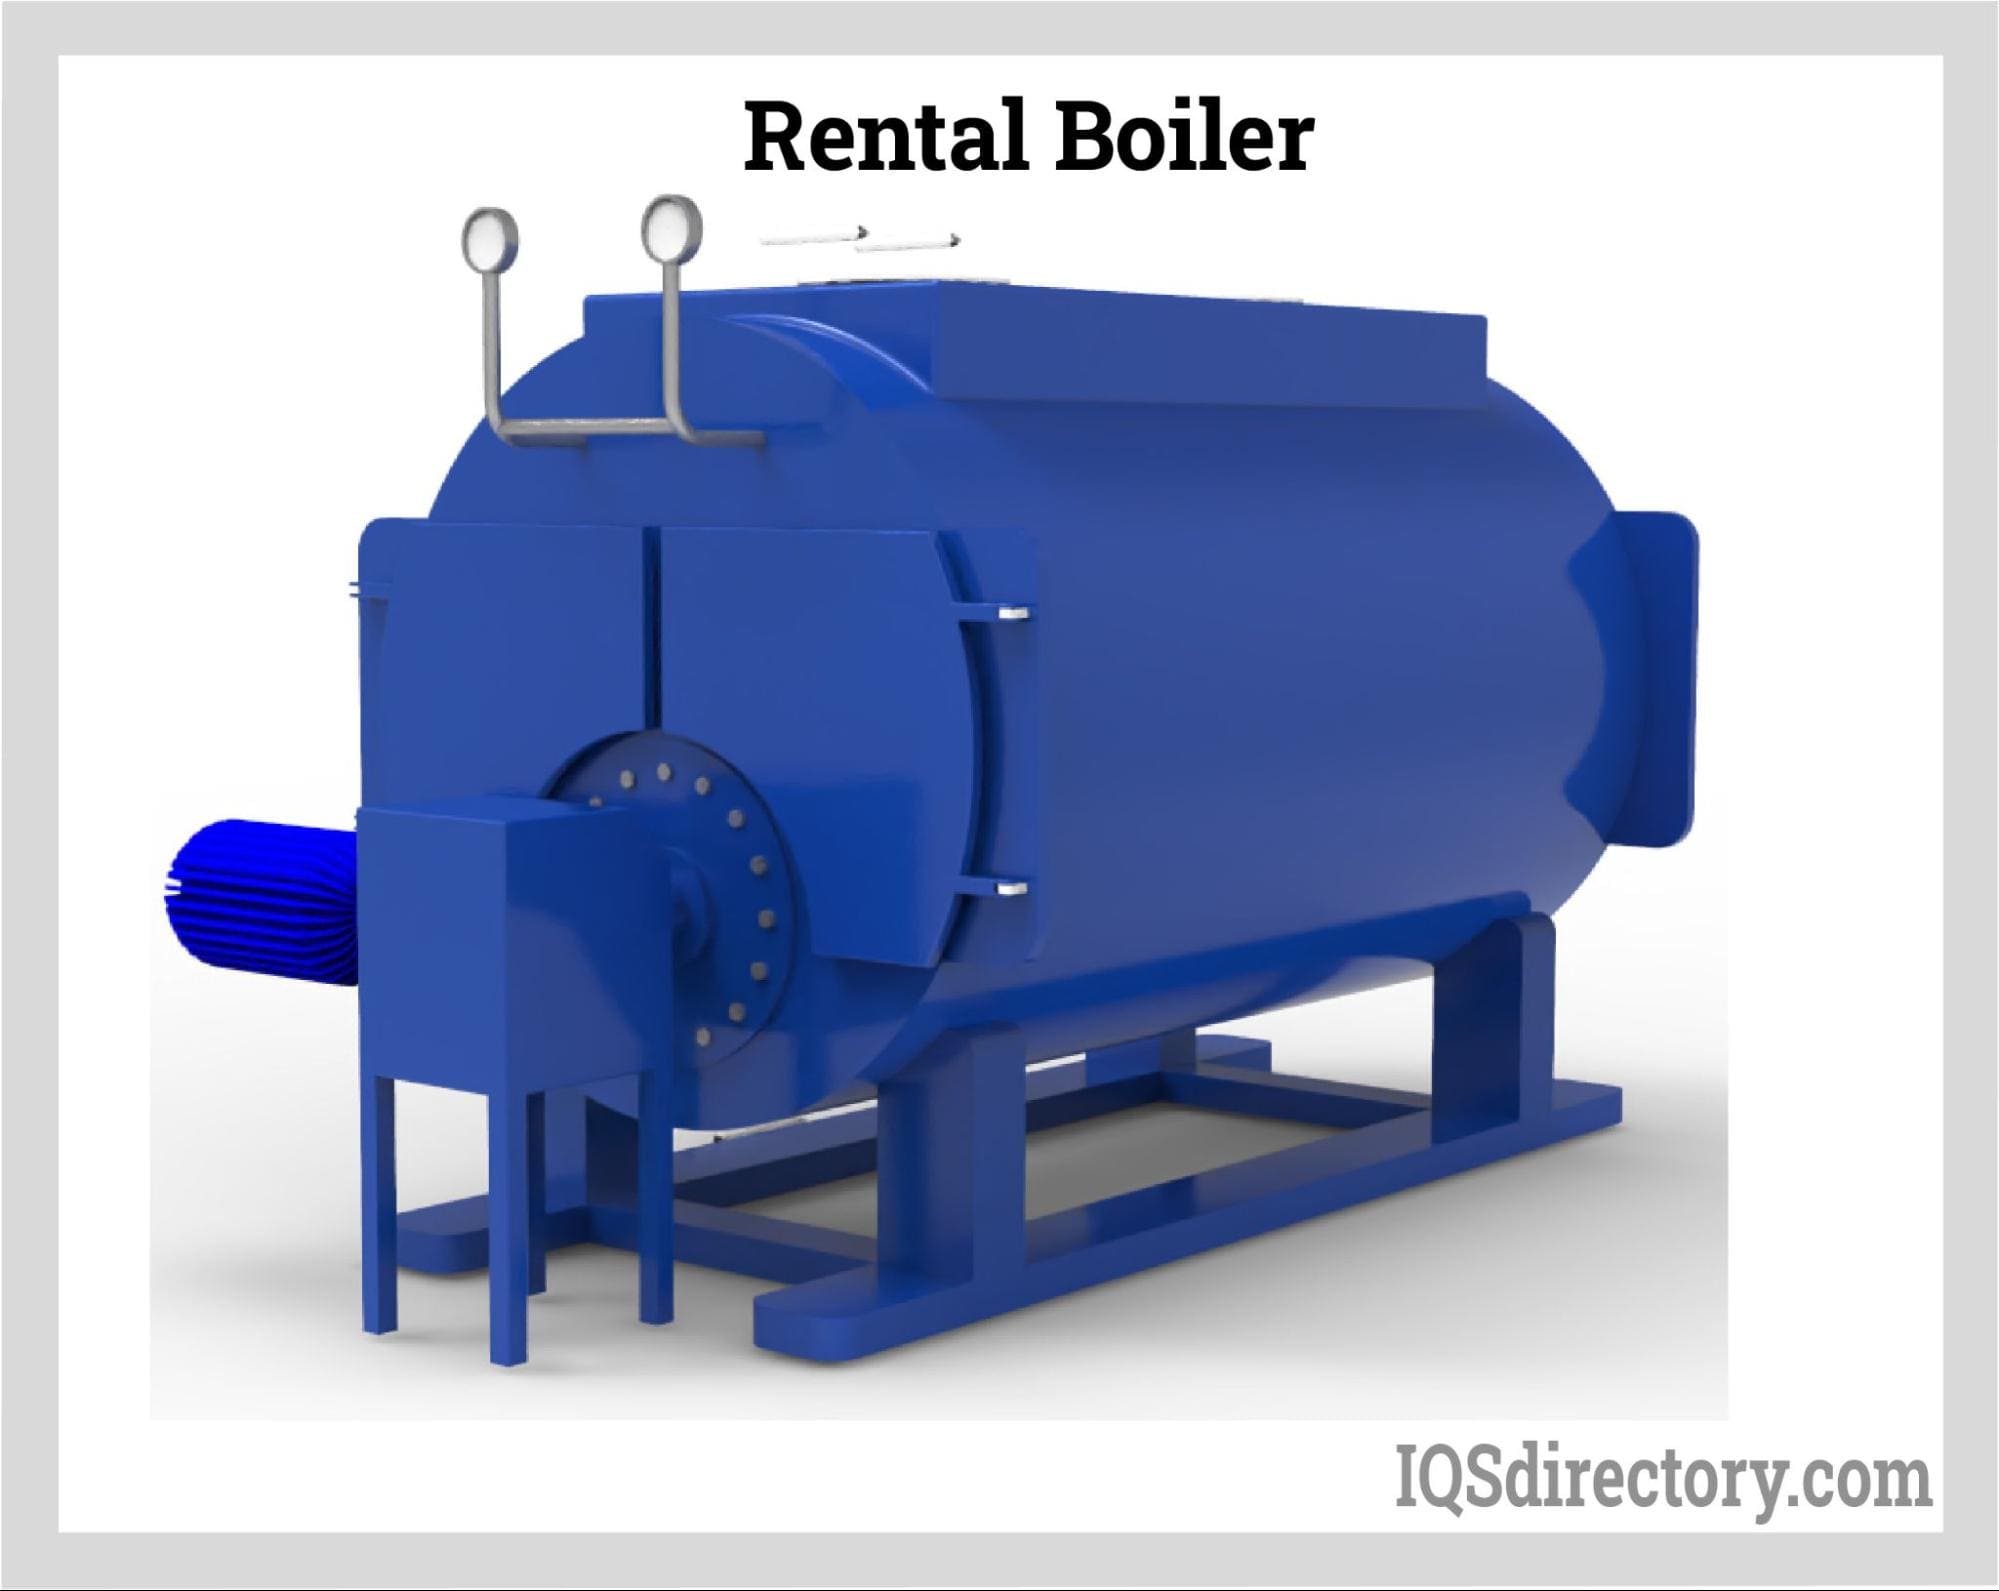 Rental Boiler